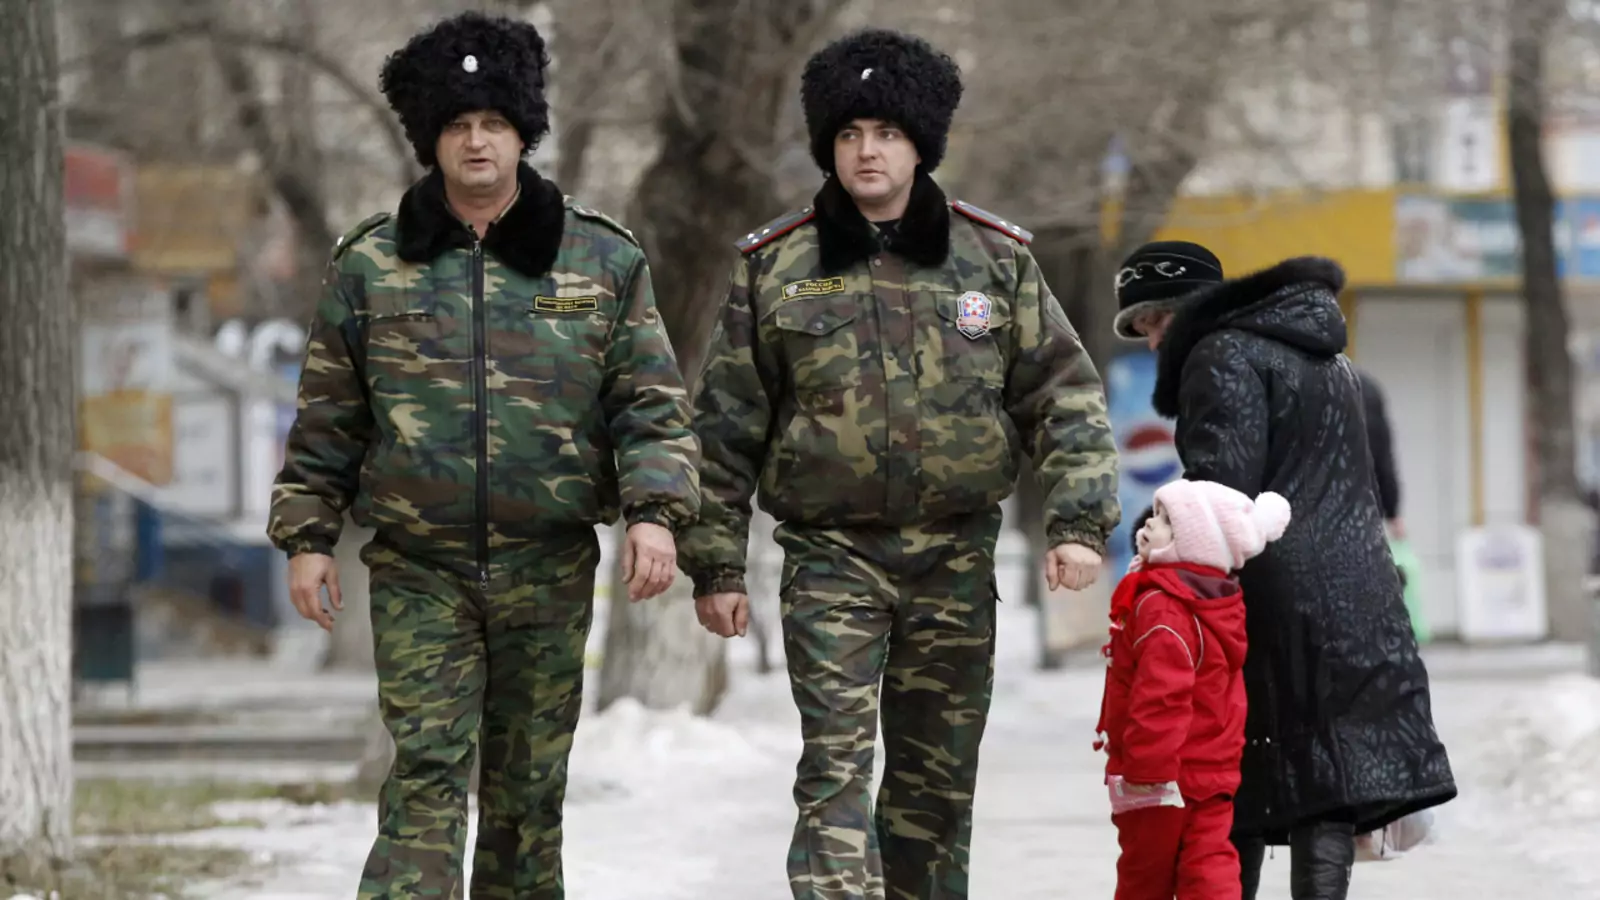 Russian cossacks patrol in central Volgograd.